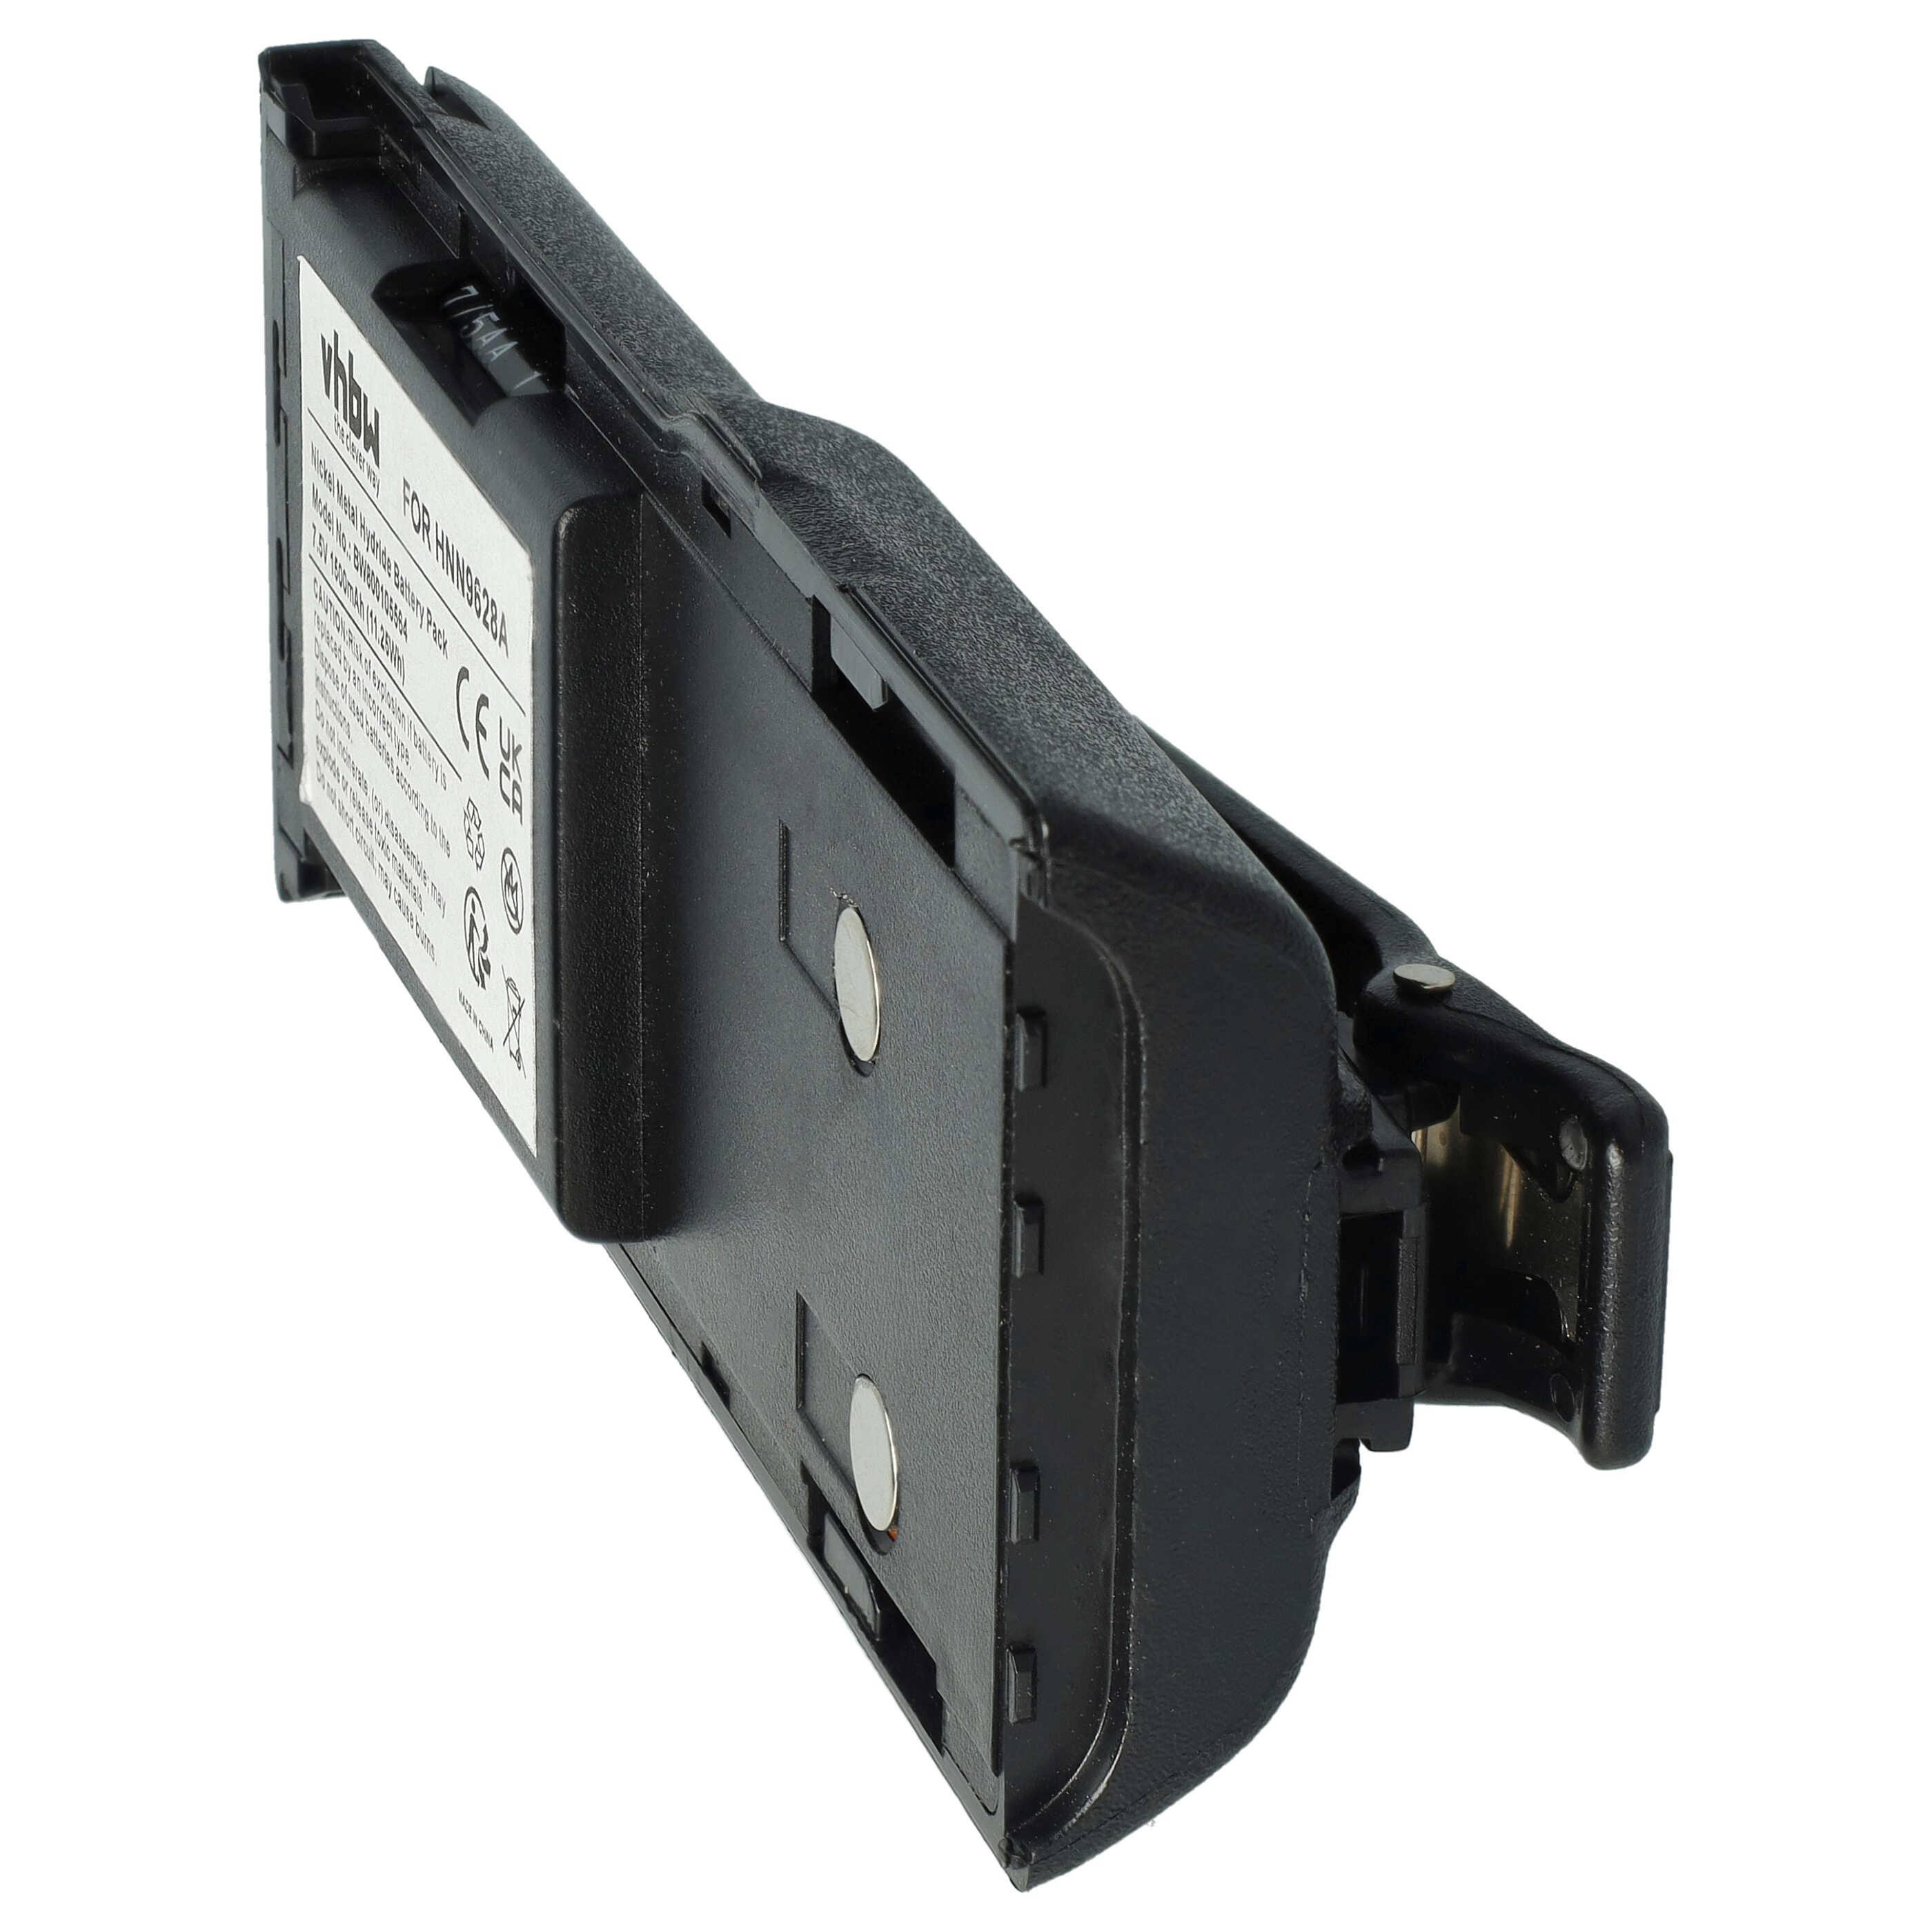 Akumulator do radiotelefonu zamiennik Motorola HNN8133C, HNN8308A - 1500 mAh 7,5 V NiMH + klips na pasek